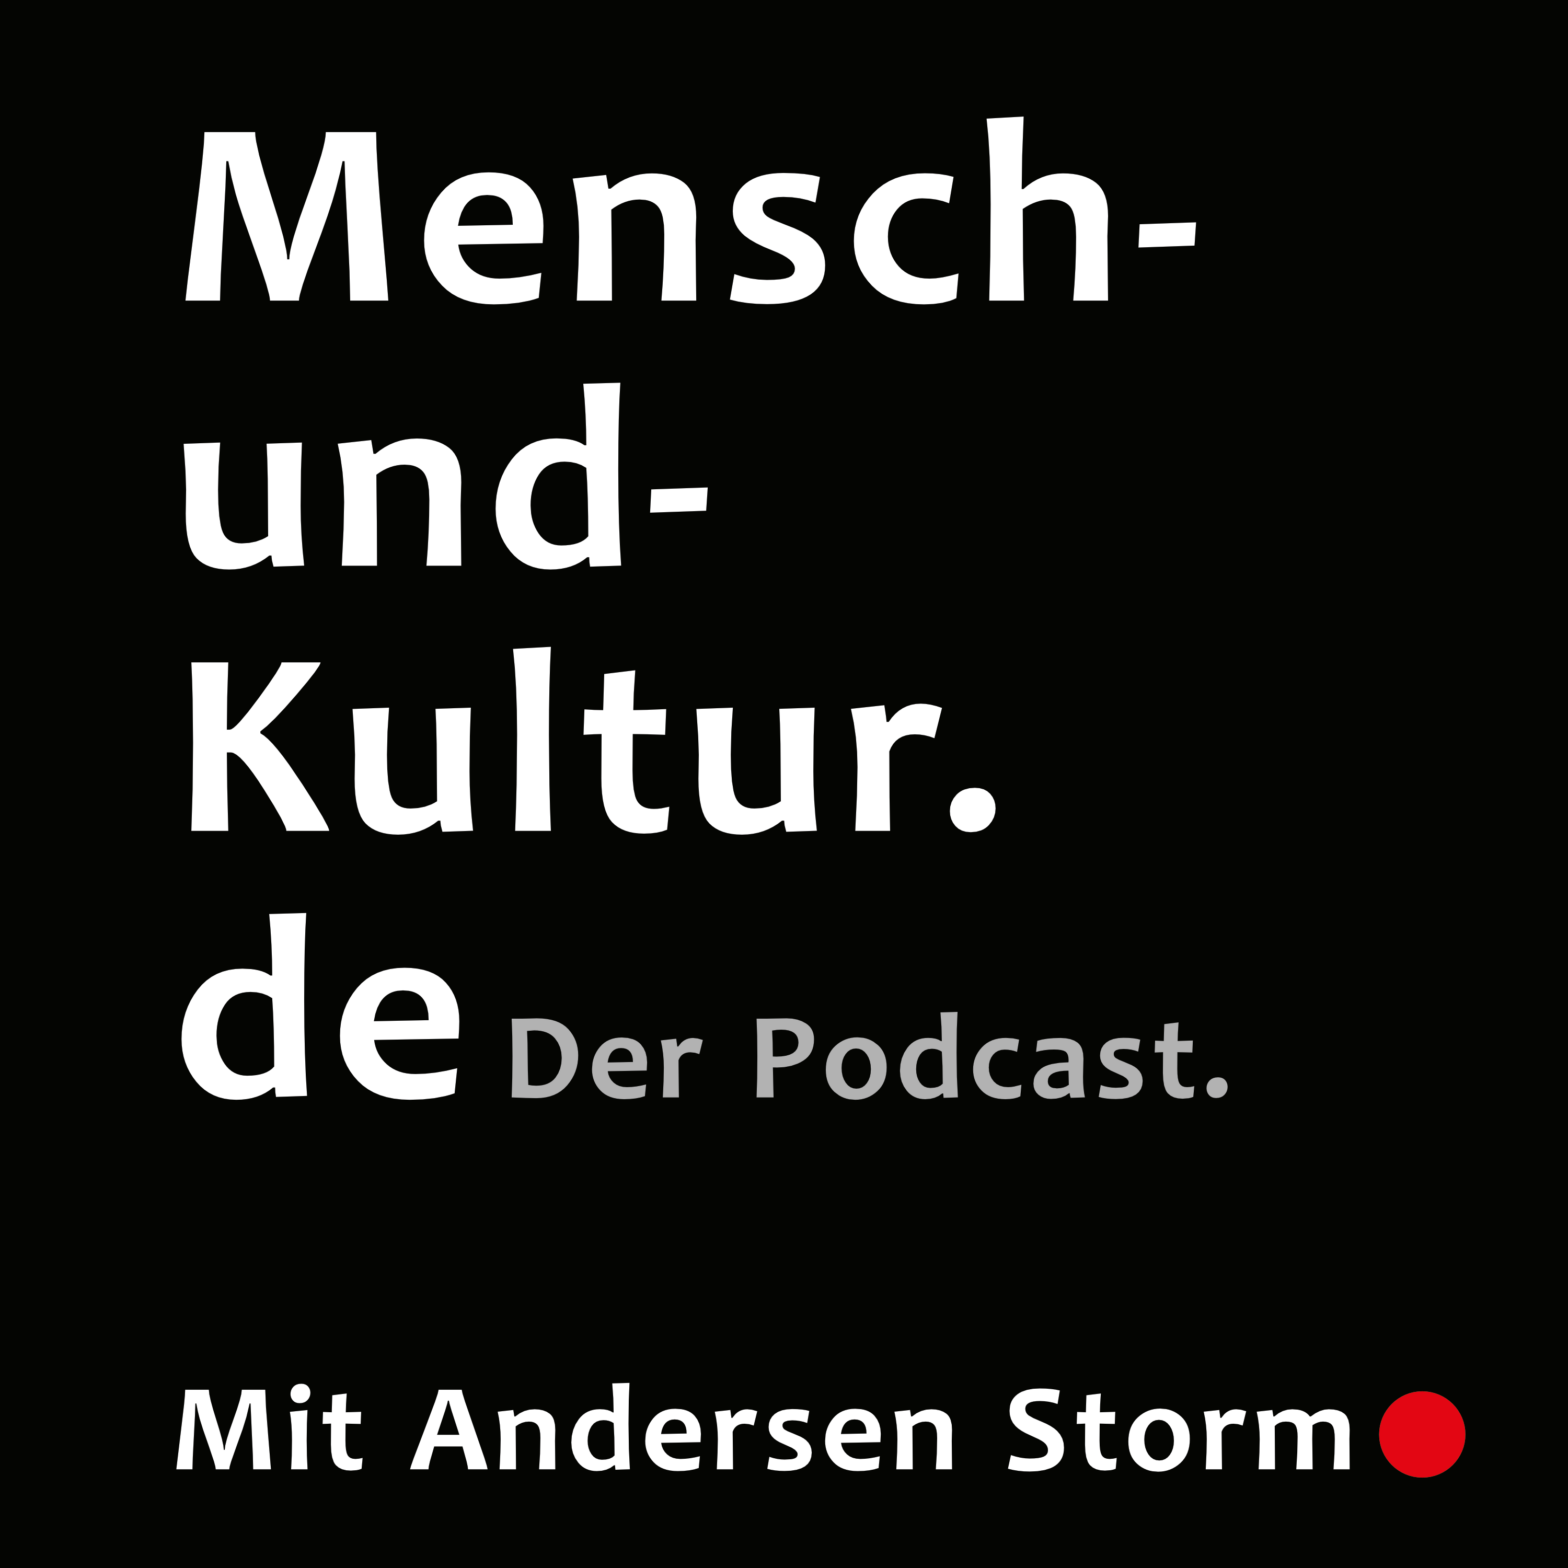 Mensch-und-Kultur.de Der Podcast mit Andersen Storm